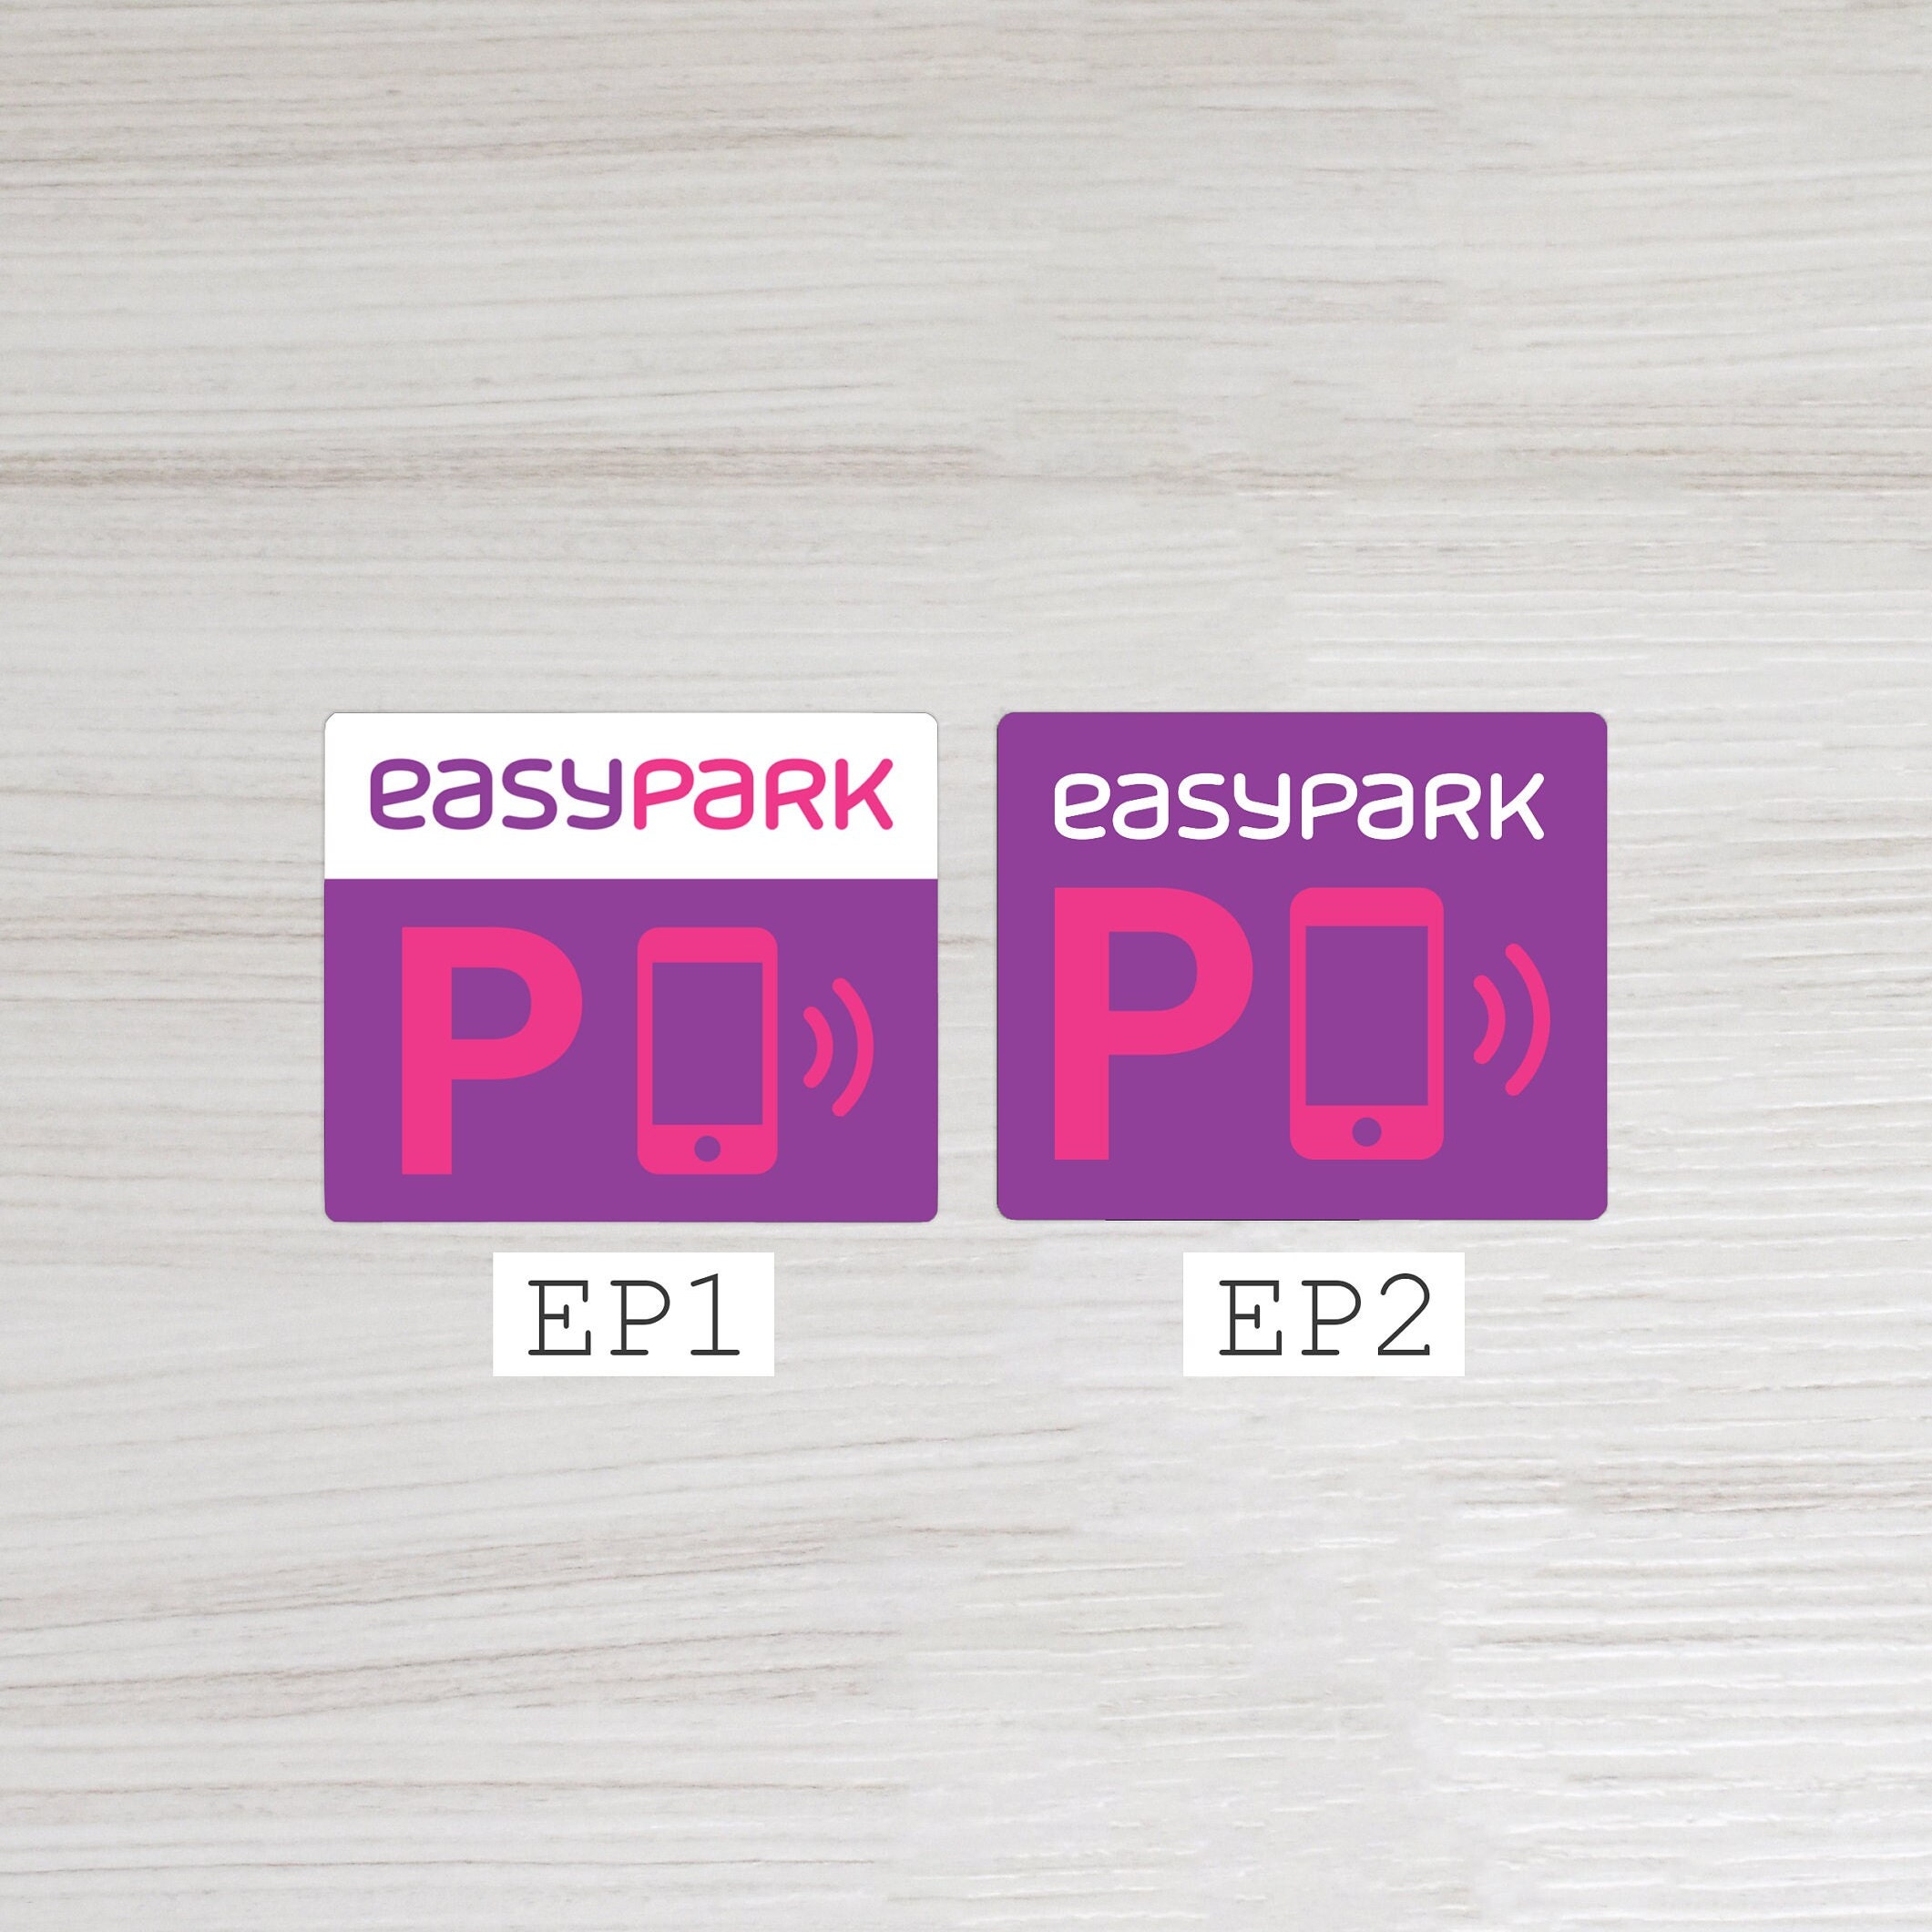 Easypark-Vignette als Sticker & zum Ausdrucken als PDF